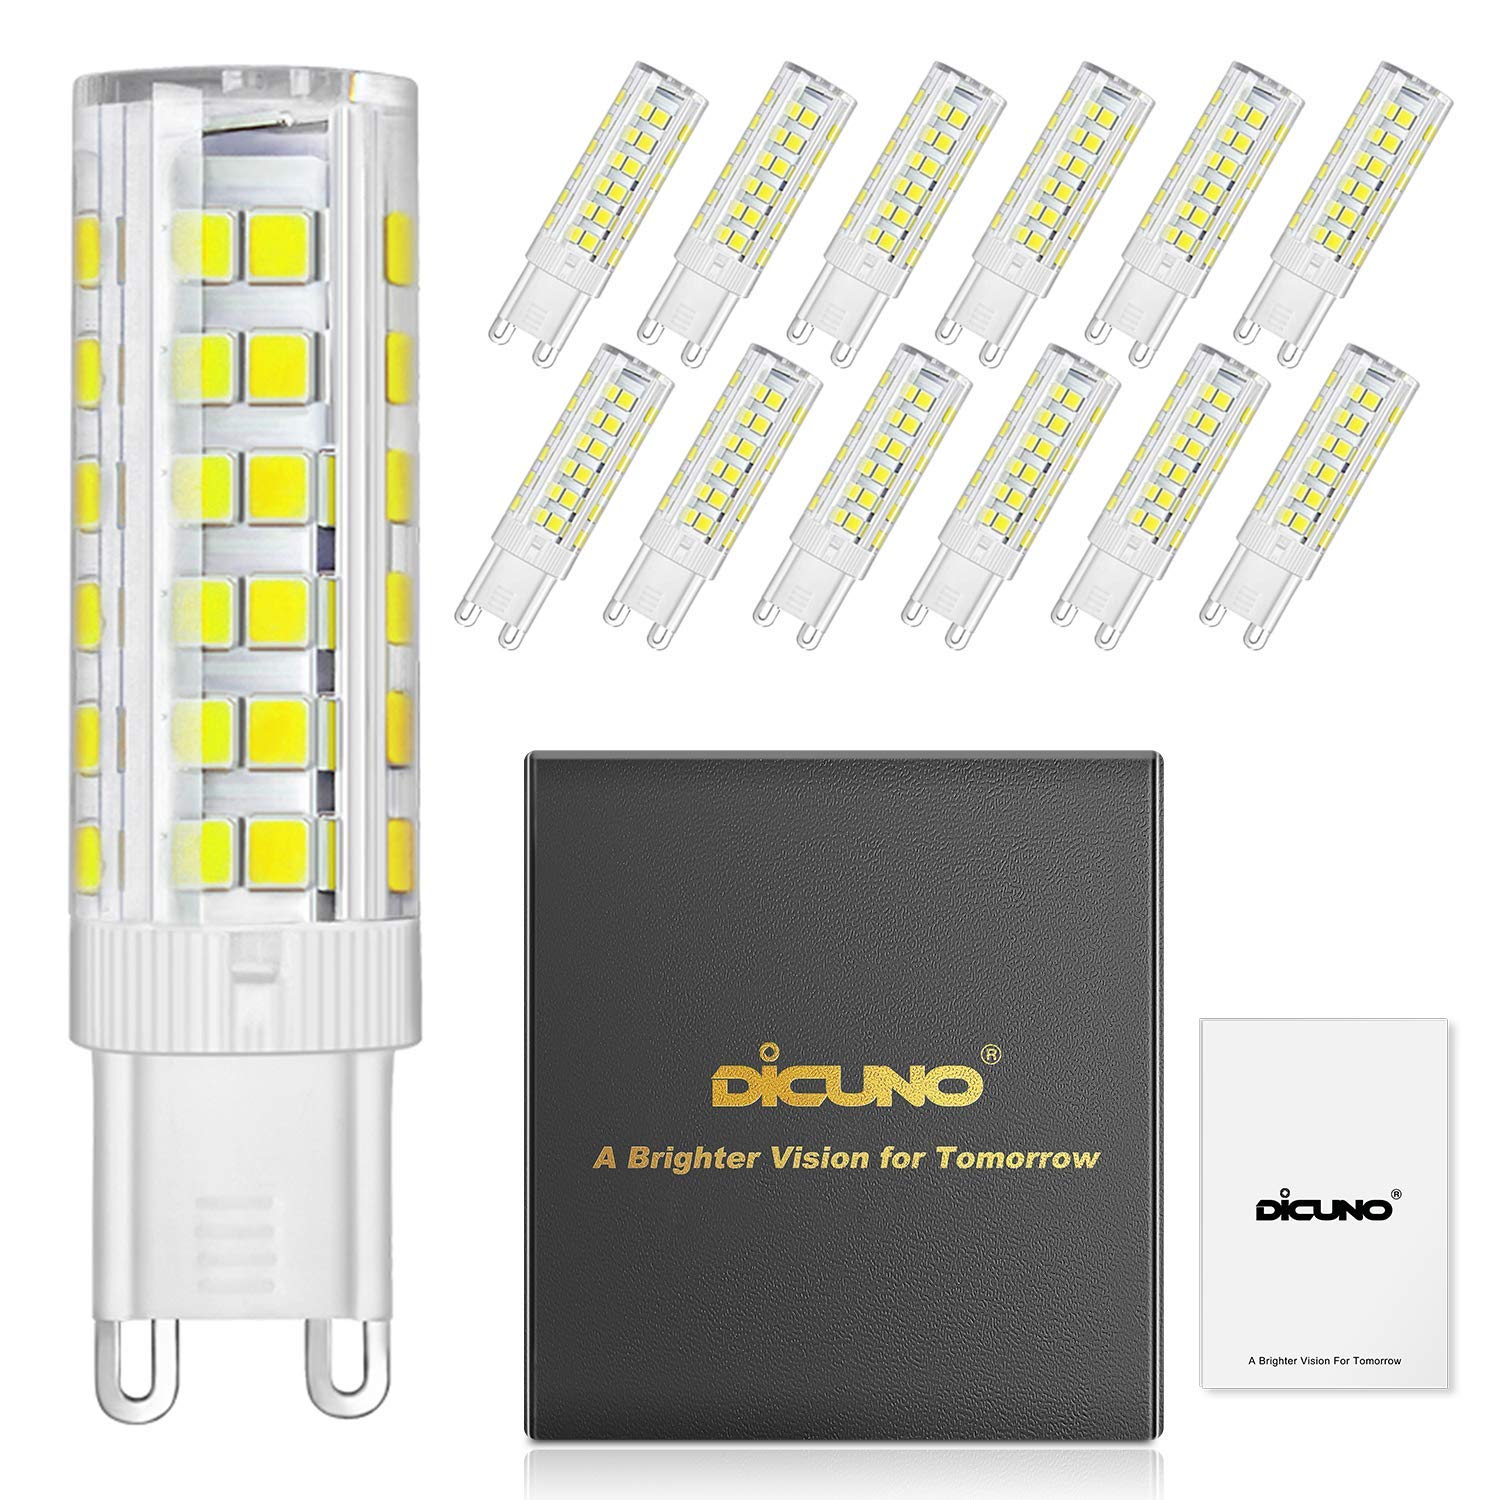 3 Watt Daylight White 6000K,120V 30 Watt Equivalent 10-Pack DiCUNO G9 Dimmable LED Bulb